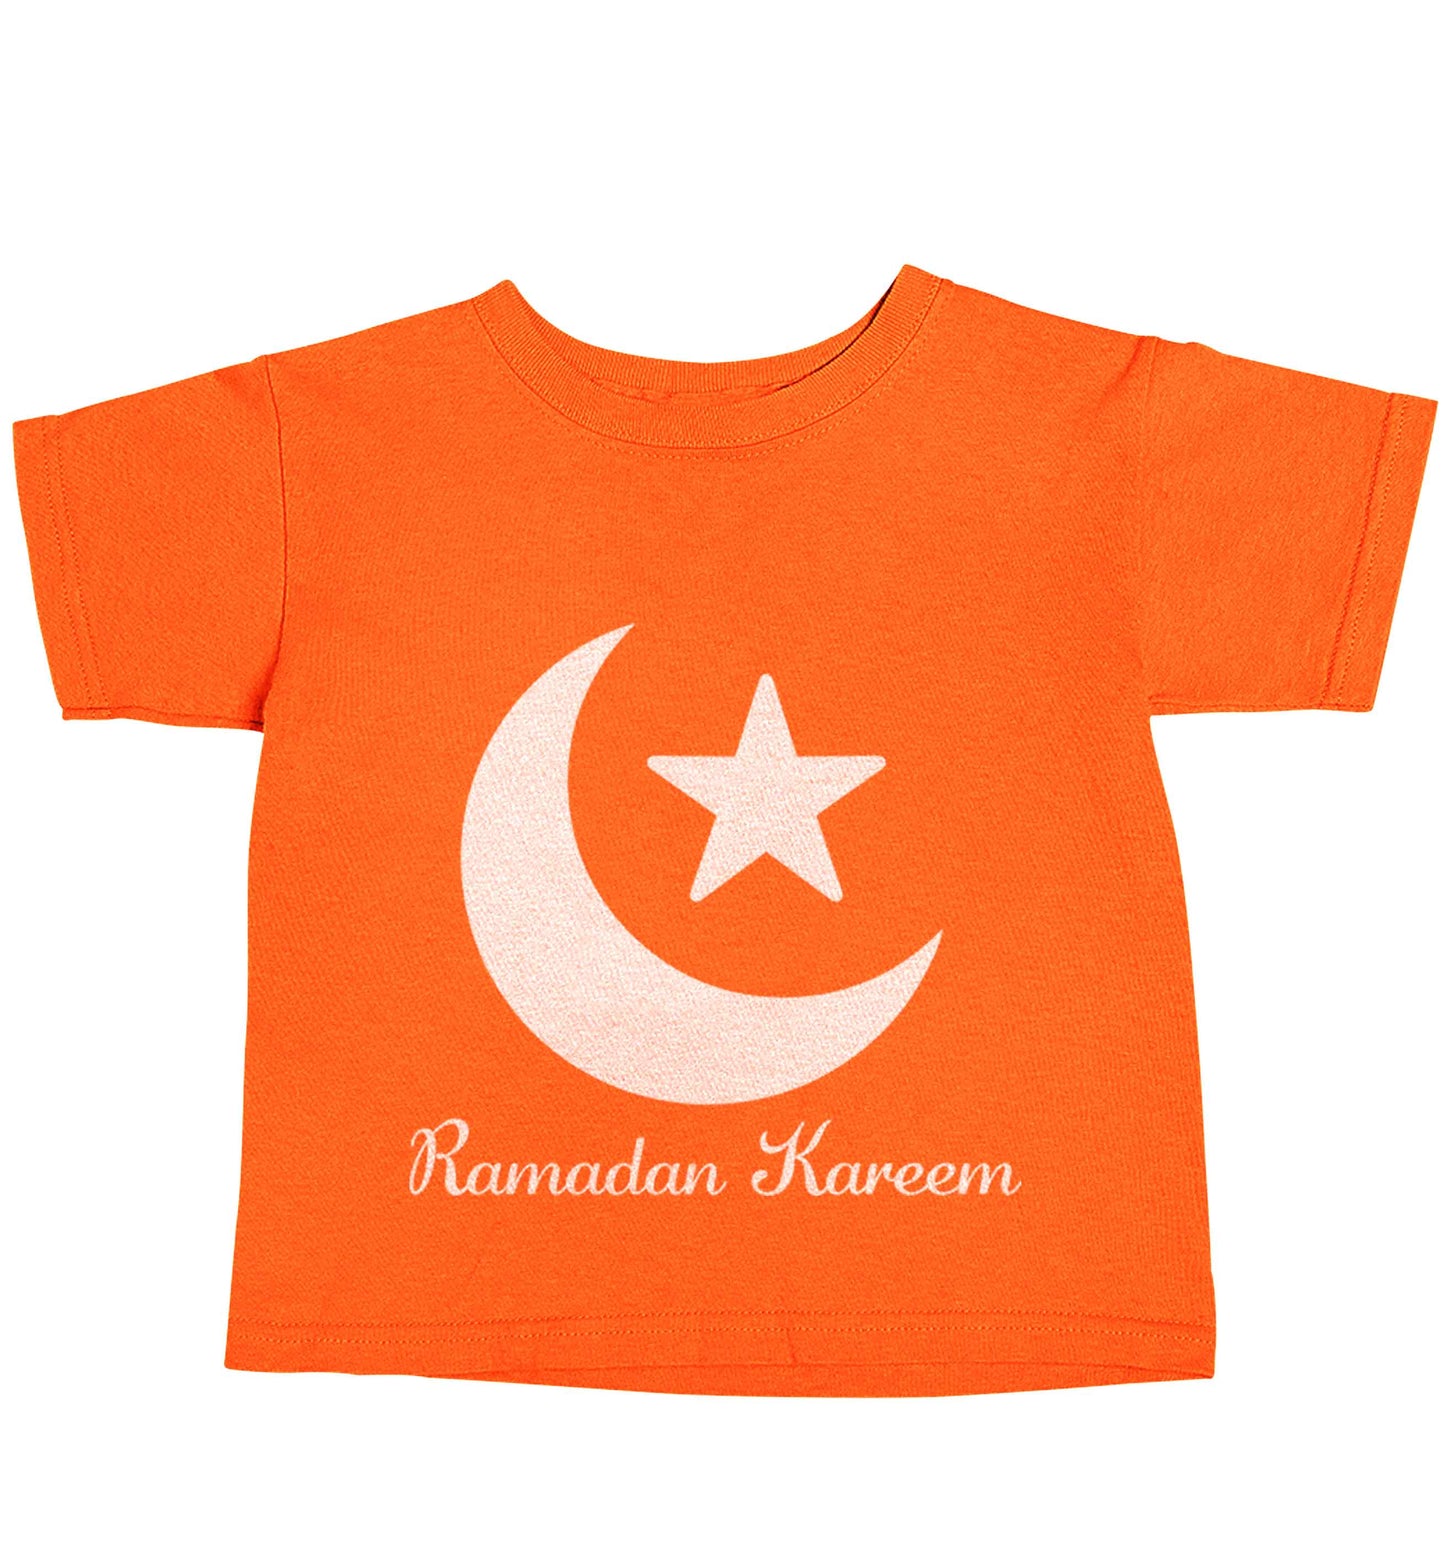 Ramadan kareem orange baby toddler Tshirt 2 Years